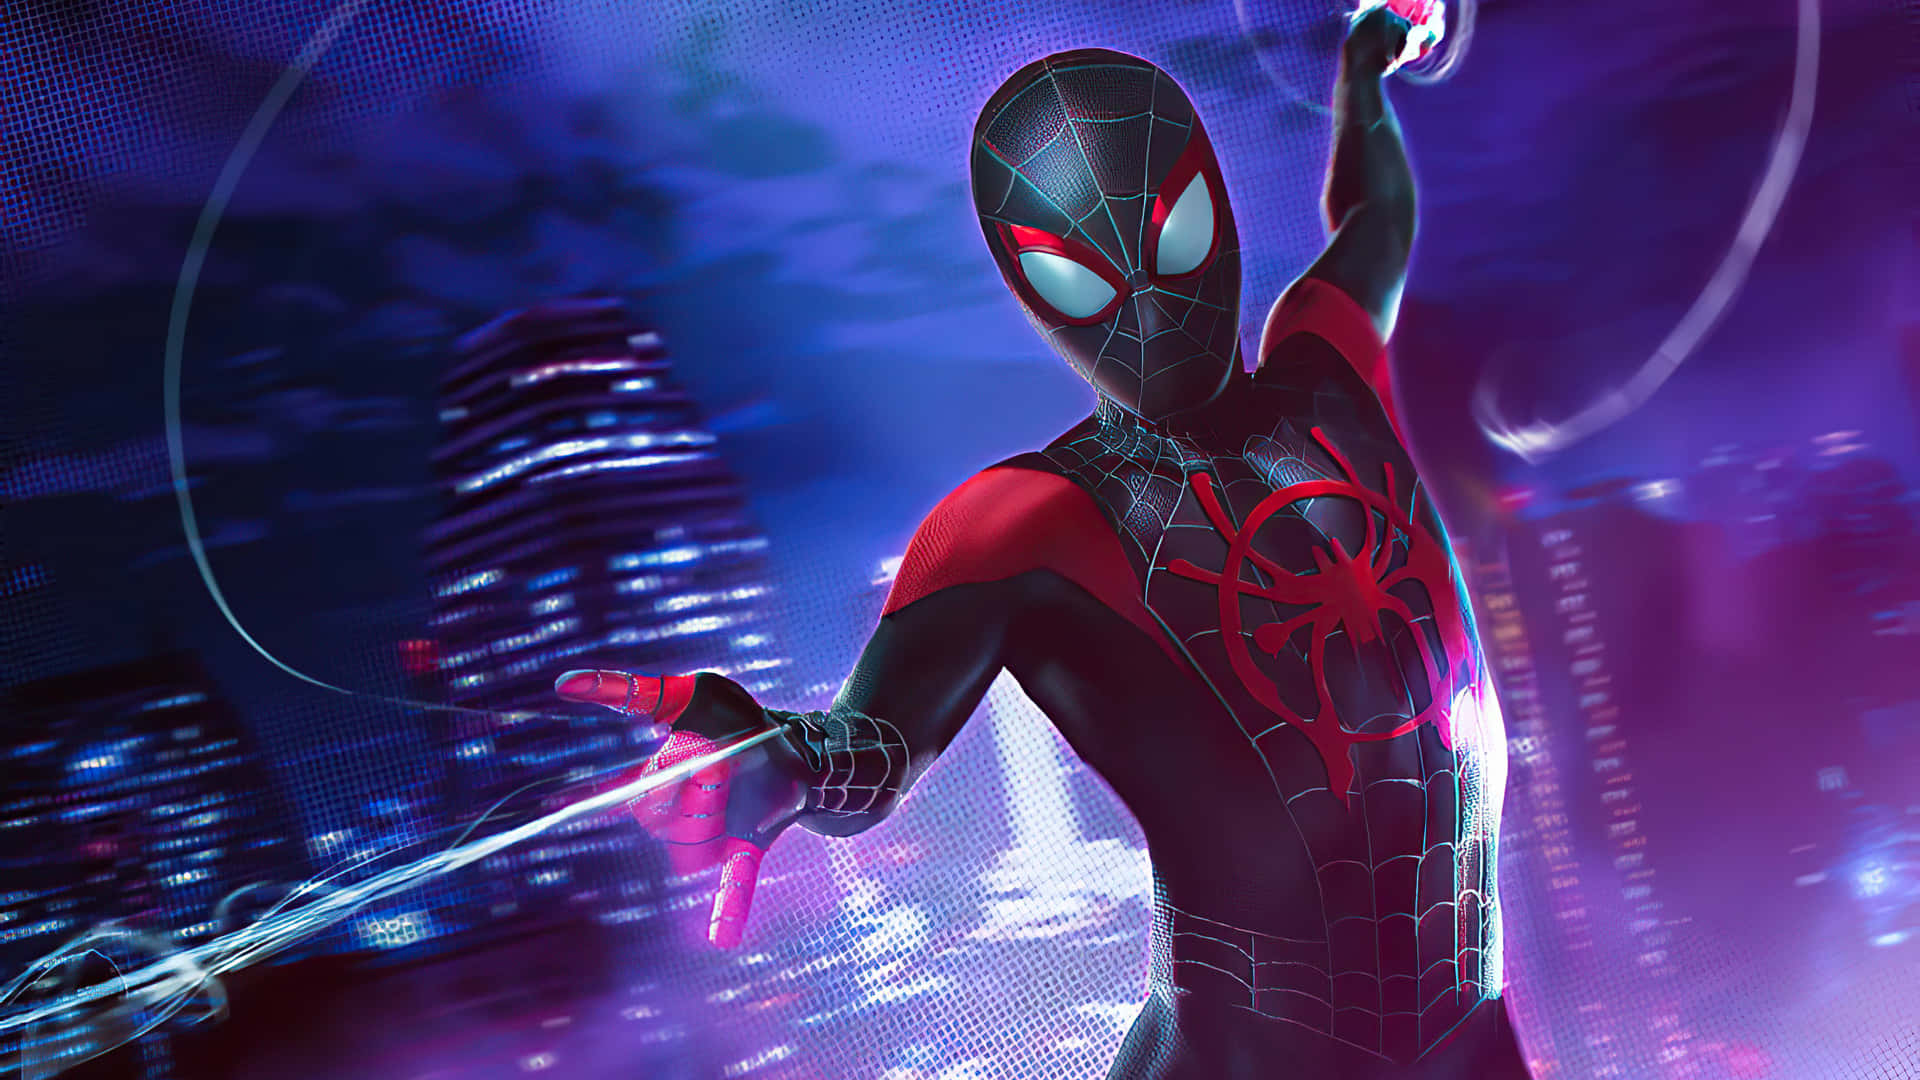 Listopara La Acción: Spiderman Se Balancea A Través Del Cielo Nocturno